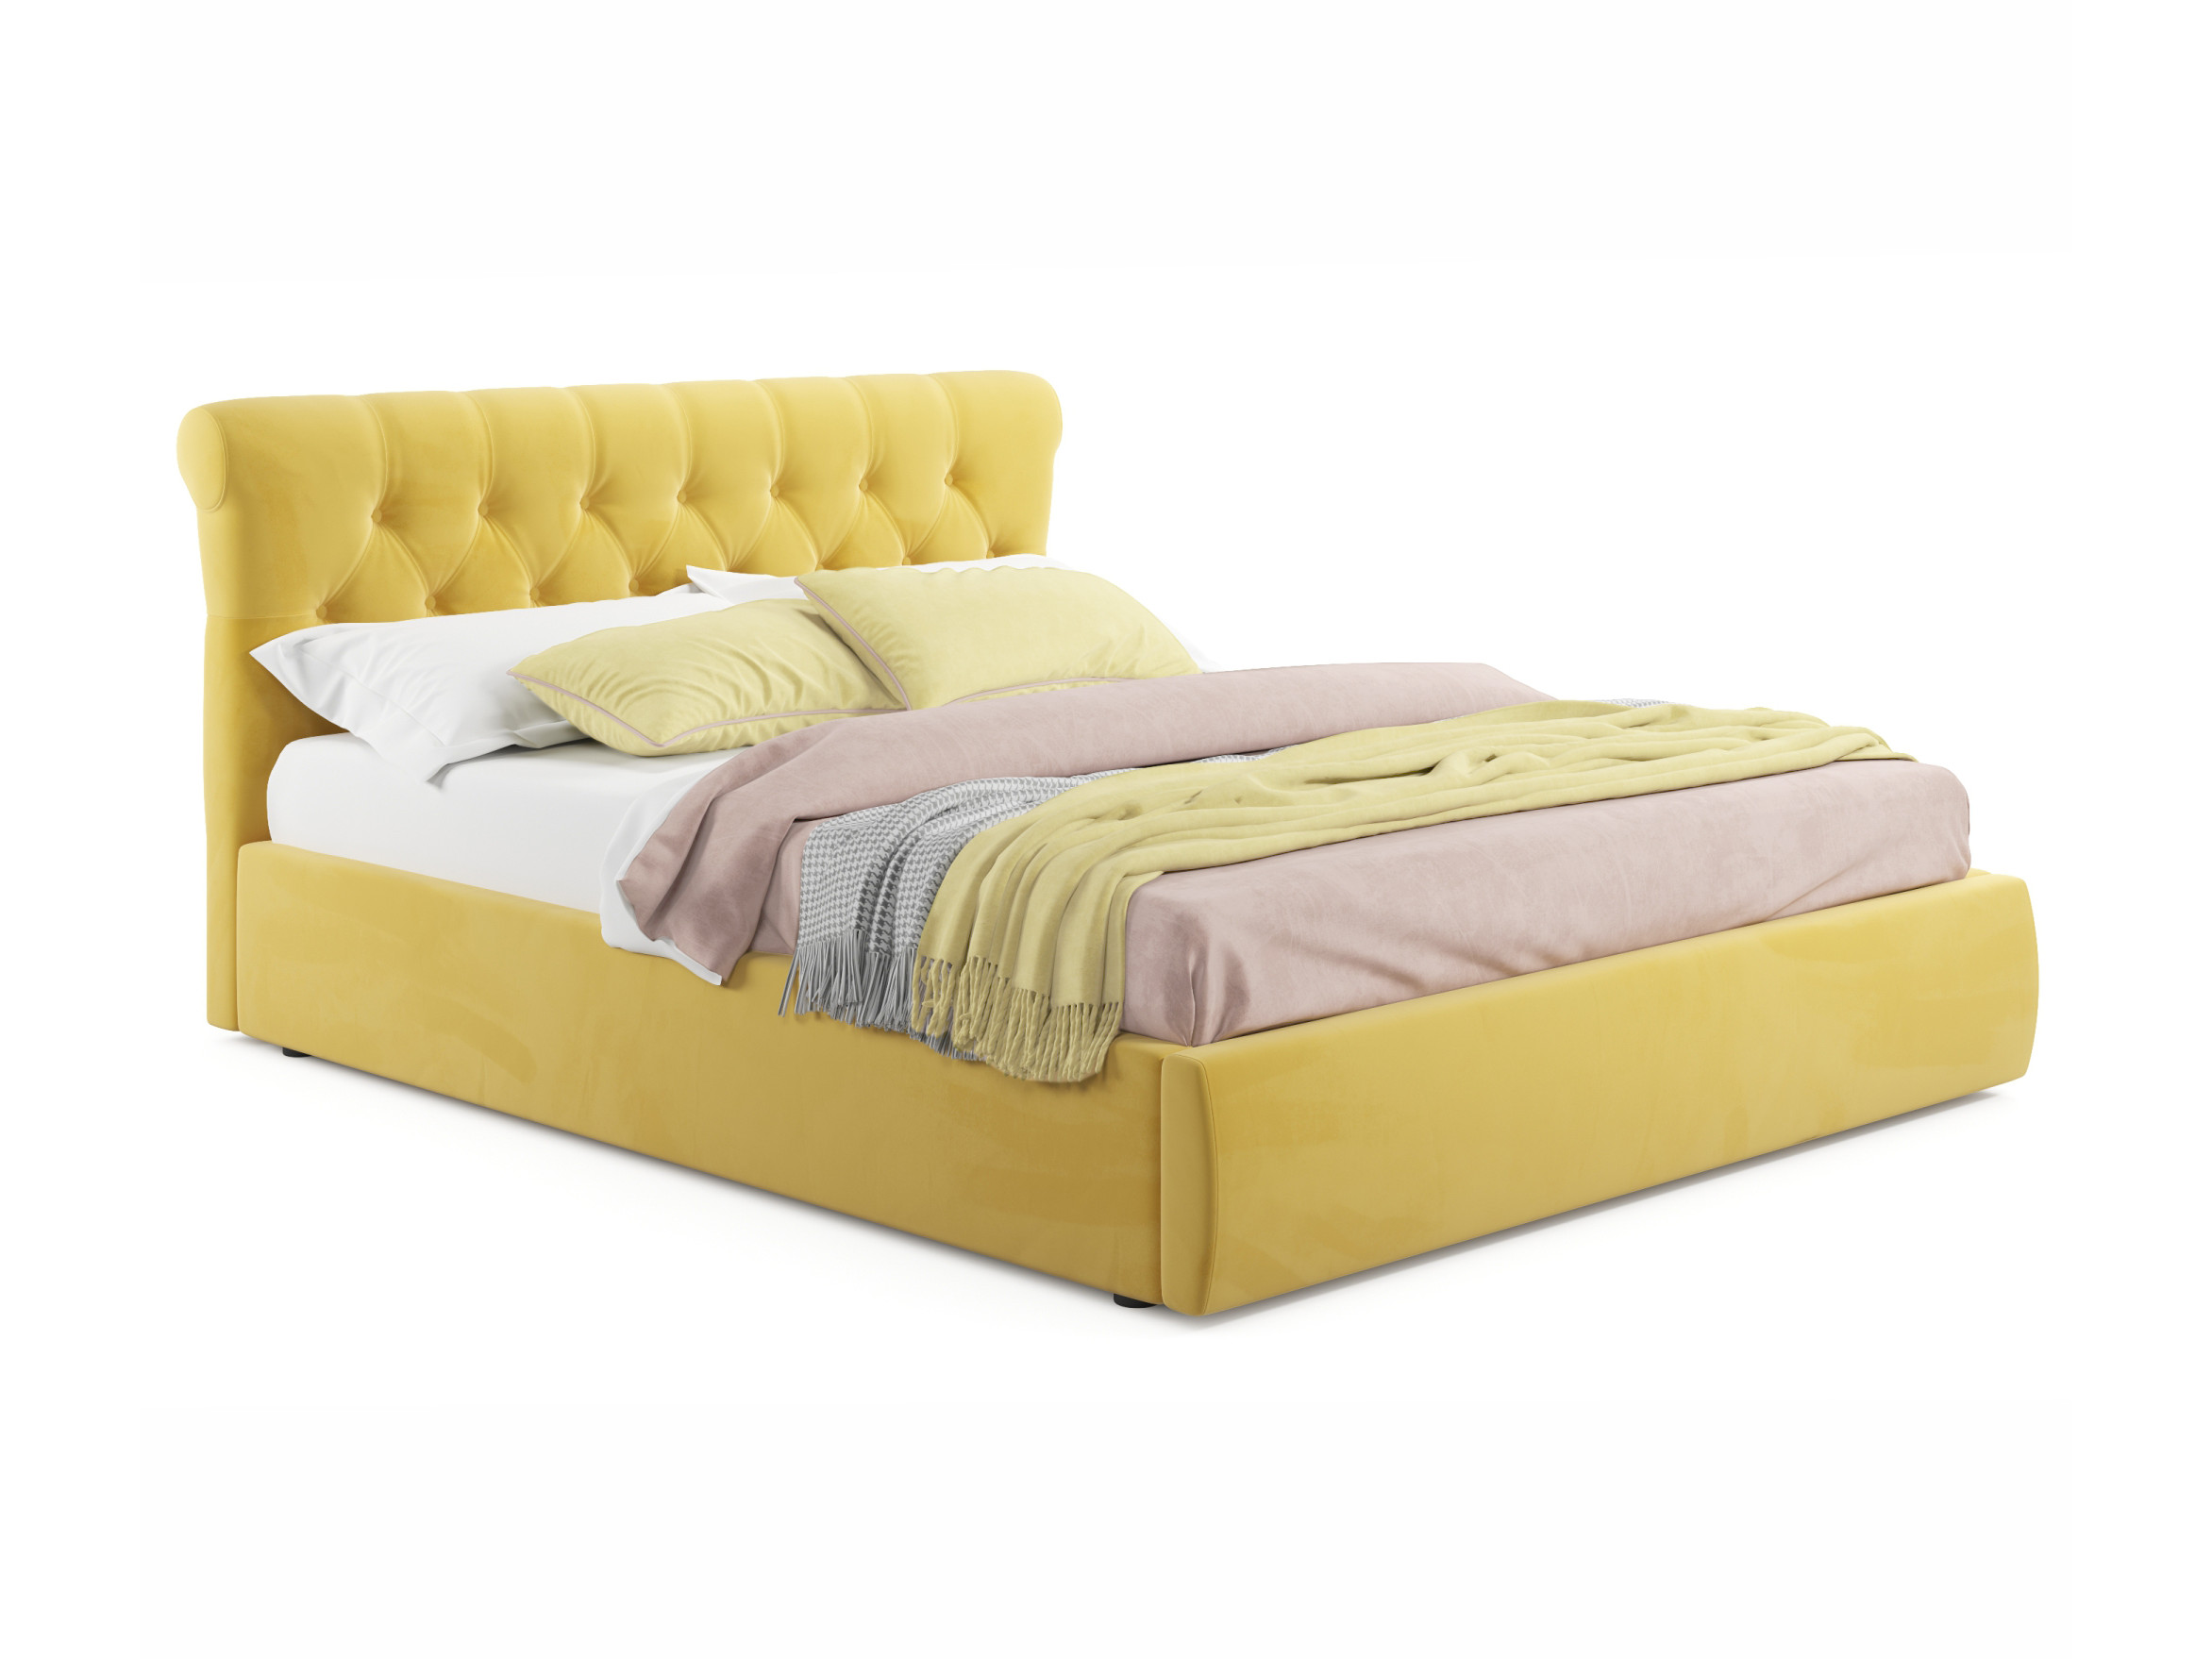 Мягкая кровать Ameli 1400 желтая с подъемным механизмом желтый, Желтый, Велюр, ДСП мягкая кровать ameli 1600 желтая с подъемным механизмом желтый желтый велюр дсп